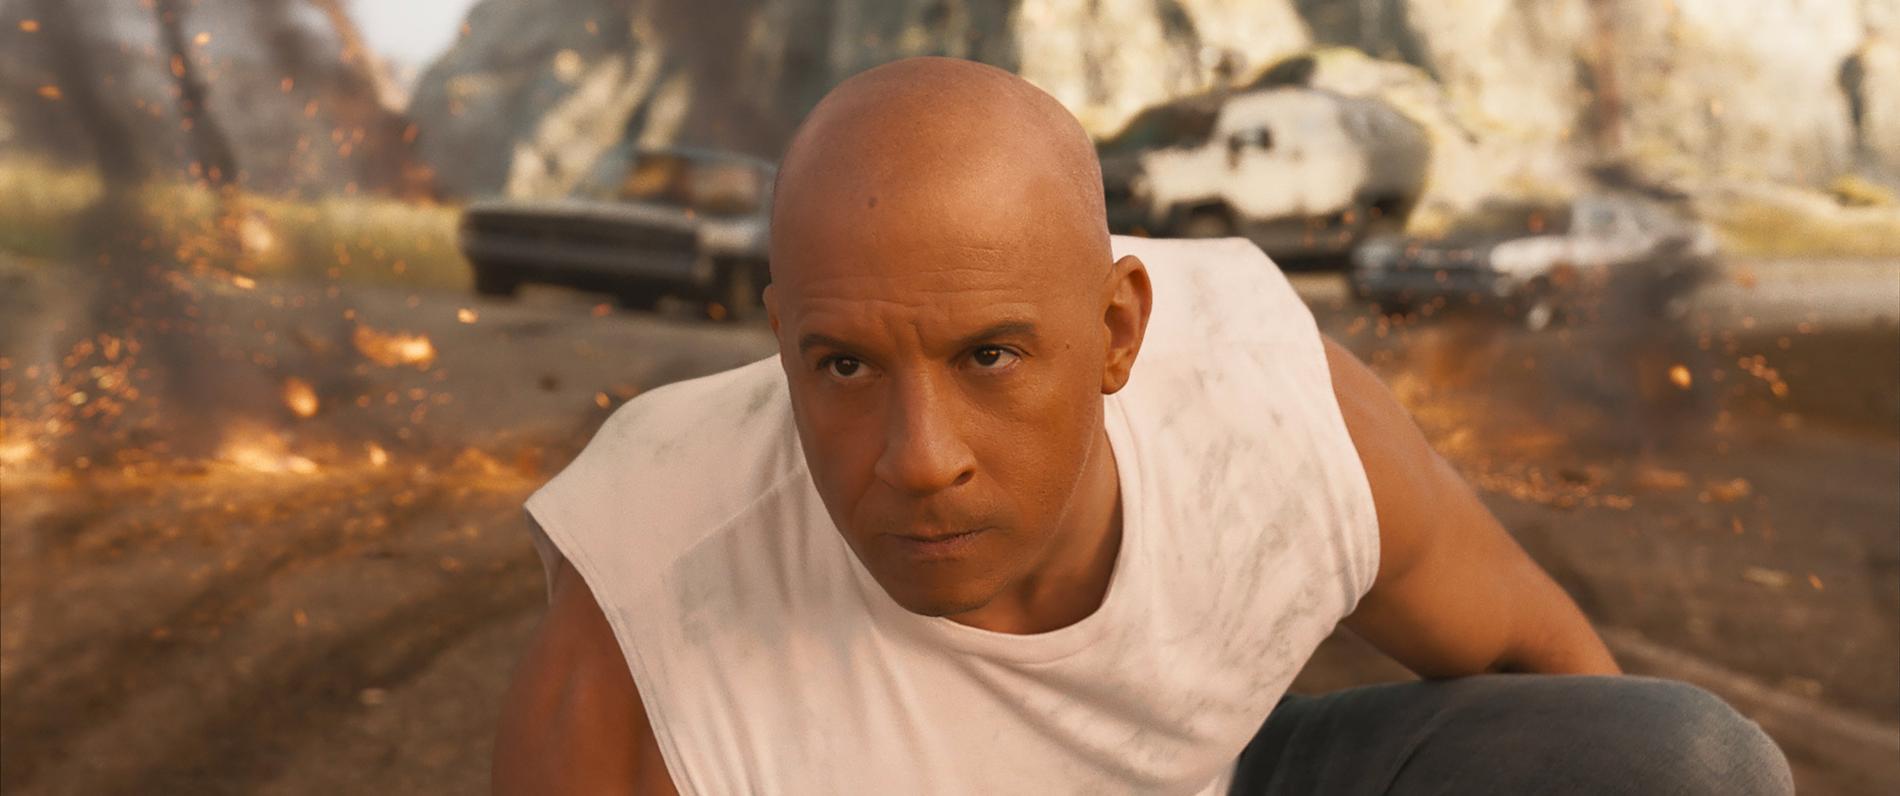 Vin Diesel spelade huvudrollen i "Fast & the furious 9: The fast saga". Under inspelningen av filmen föll en stuntman och skadade sig allvarligt. Pressbild.